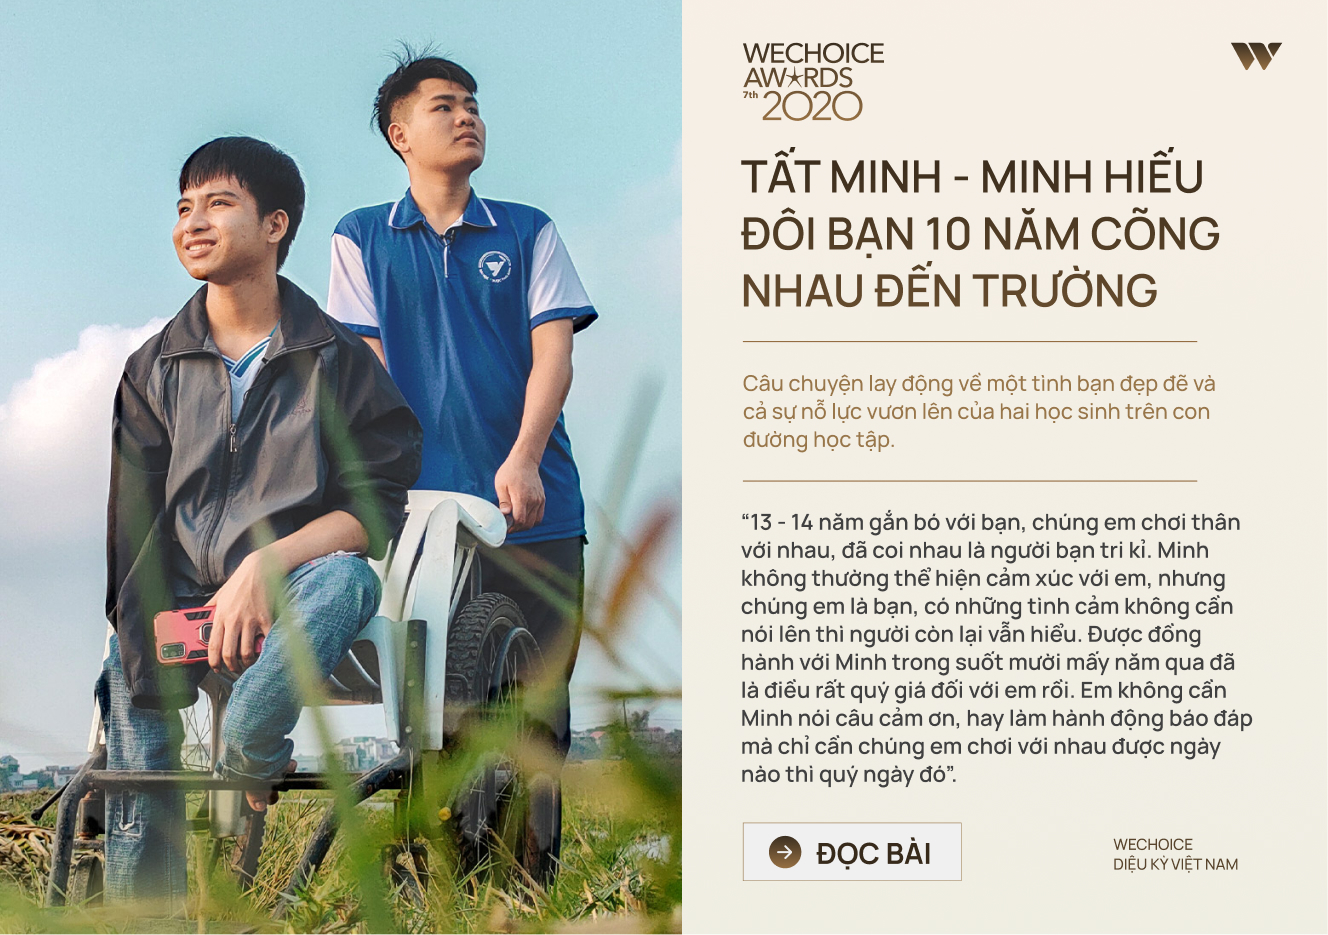 20 đề cử nhân vật truyền cảm hứng của WeChoice Awards 2020: Những câu chuyện tạo nên Diệu kỳ Việt Nam - Ảnh 10.